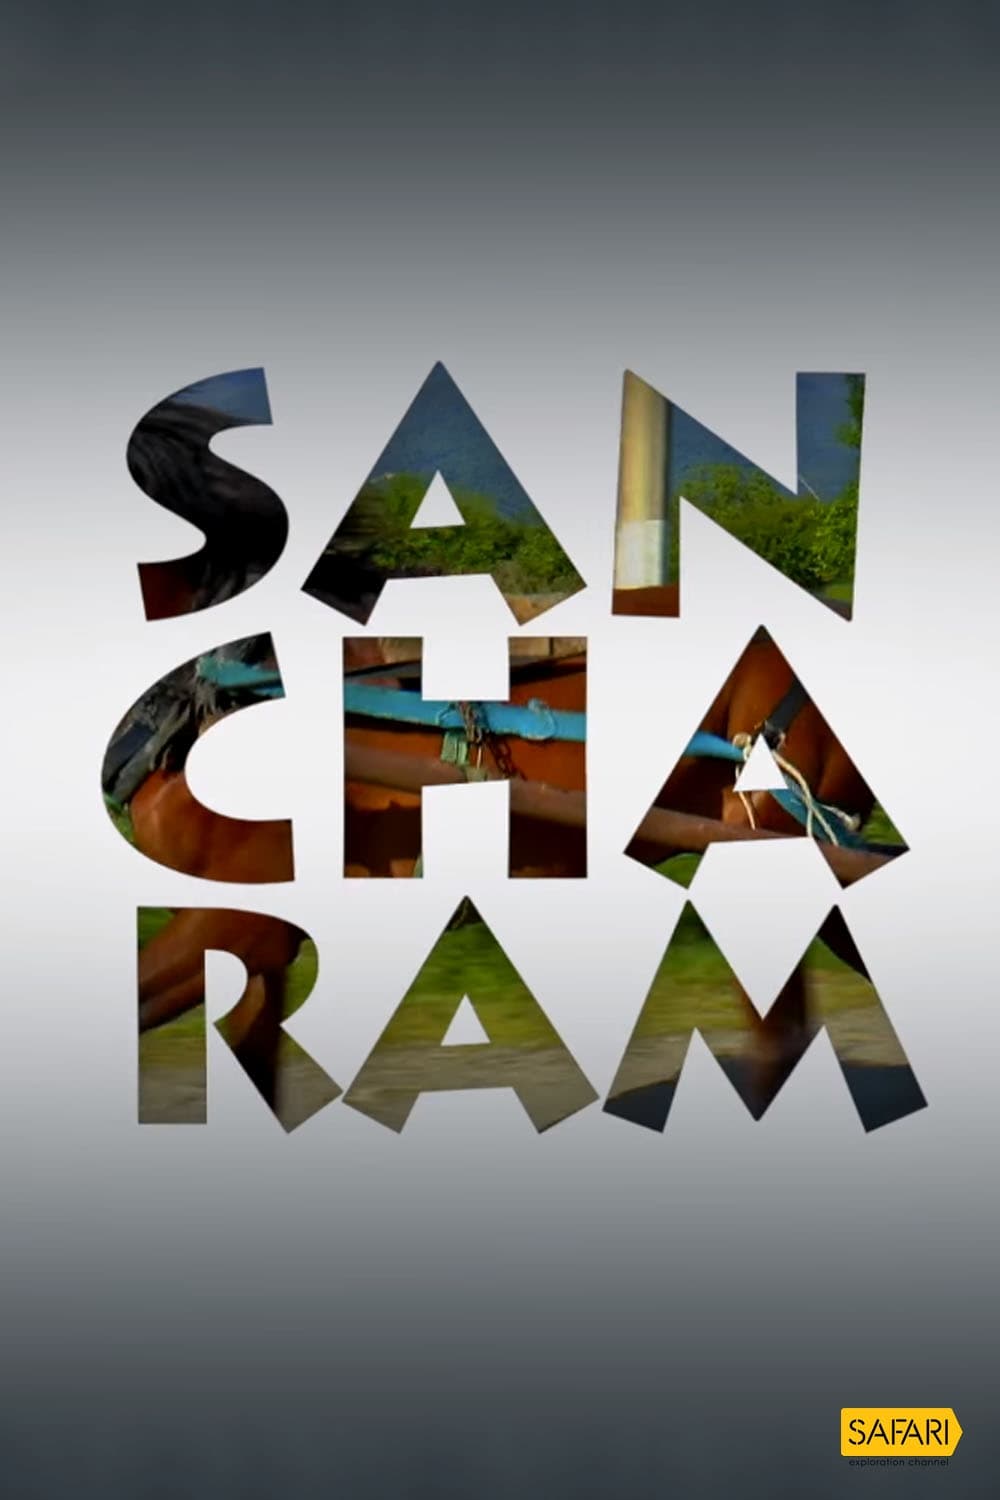 Sancharam